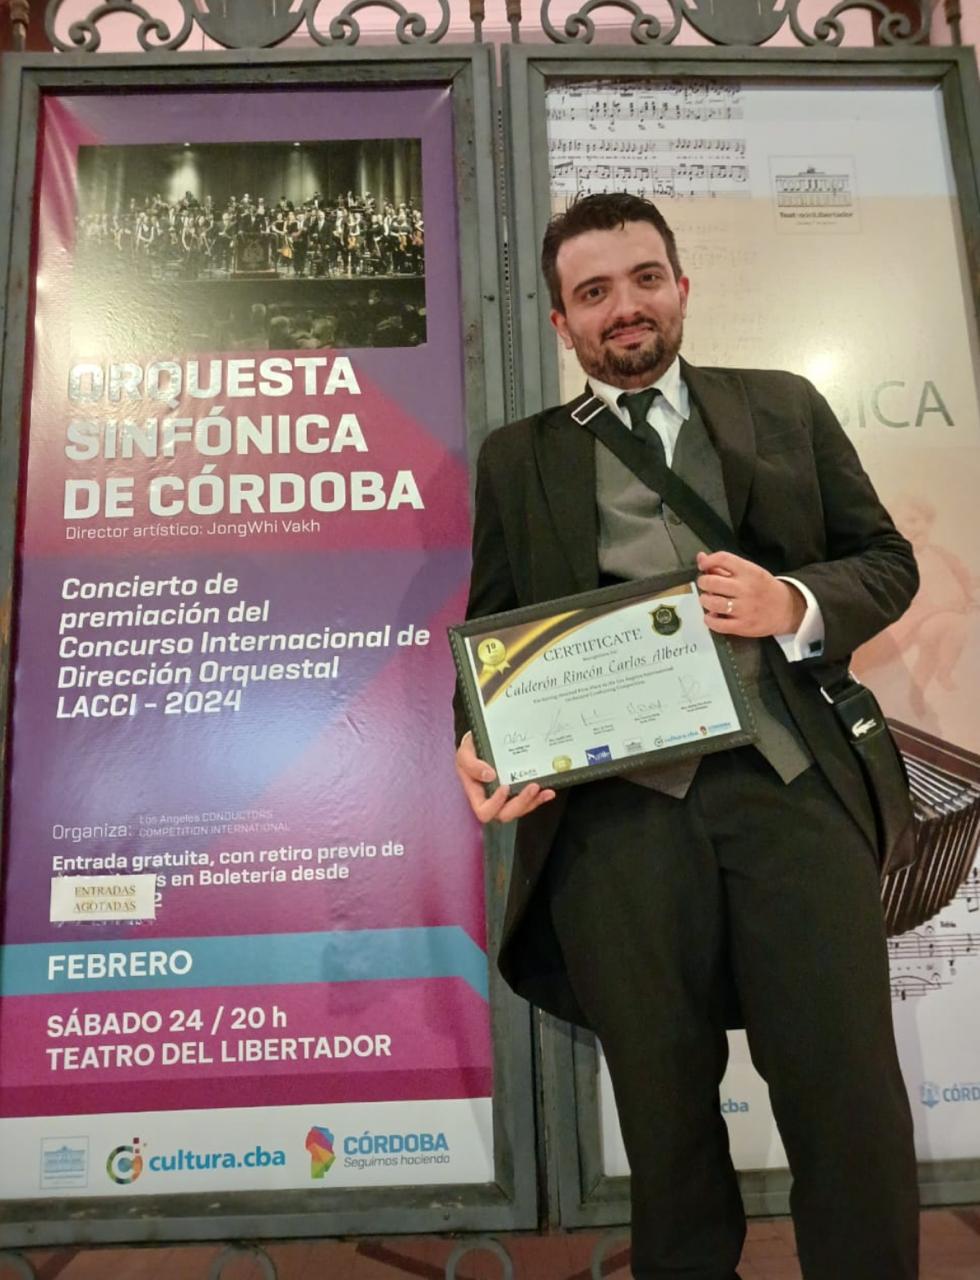 Carlos Calderón Triunfa En El Concurso Internacional De Dirección Orquestal LACCI-2024 En Argentina